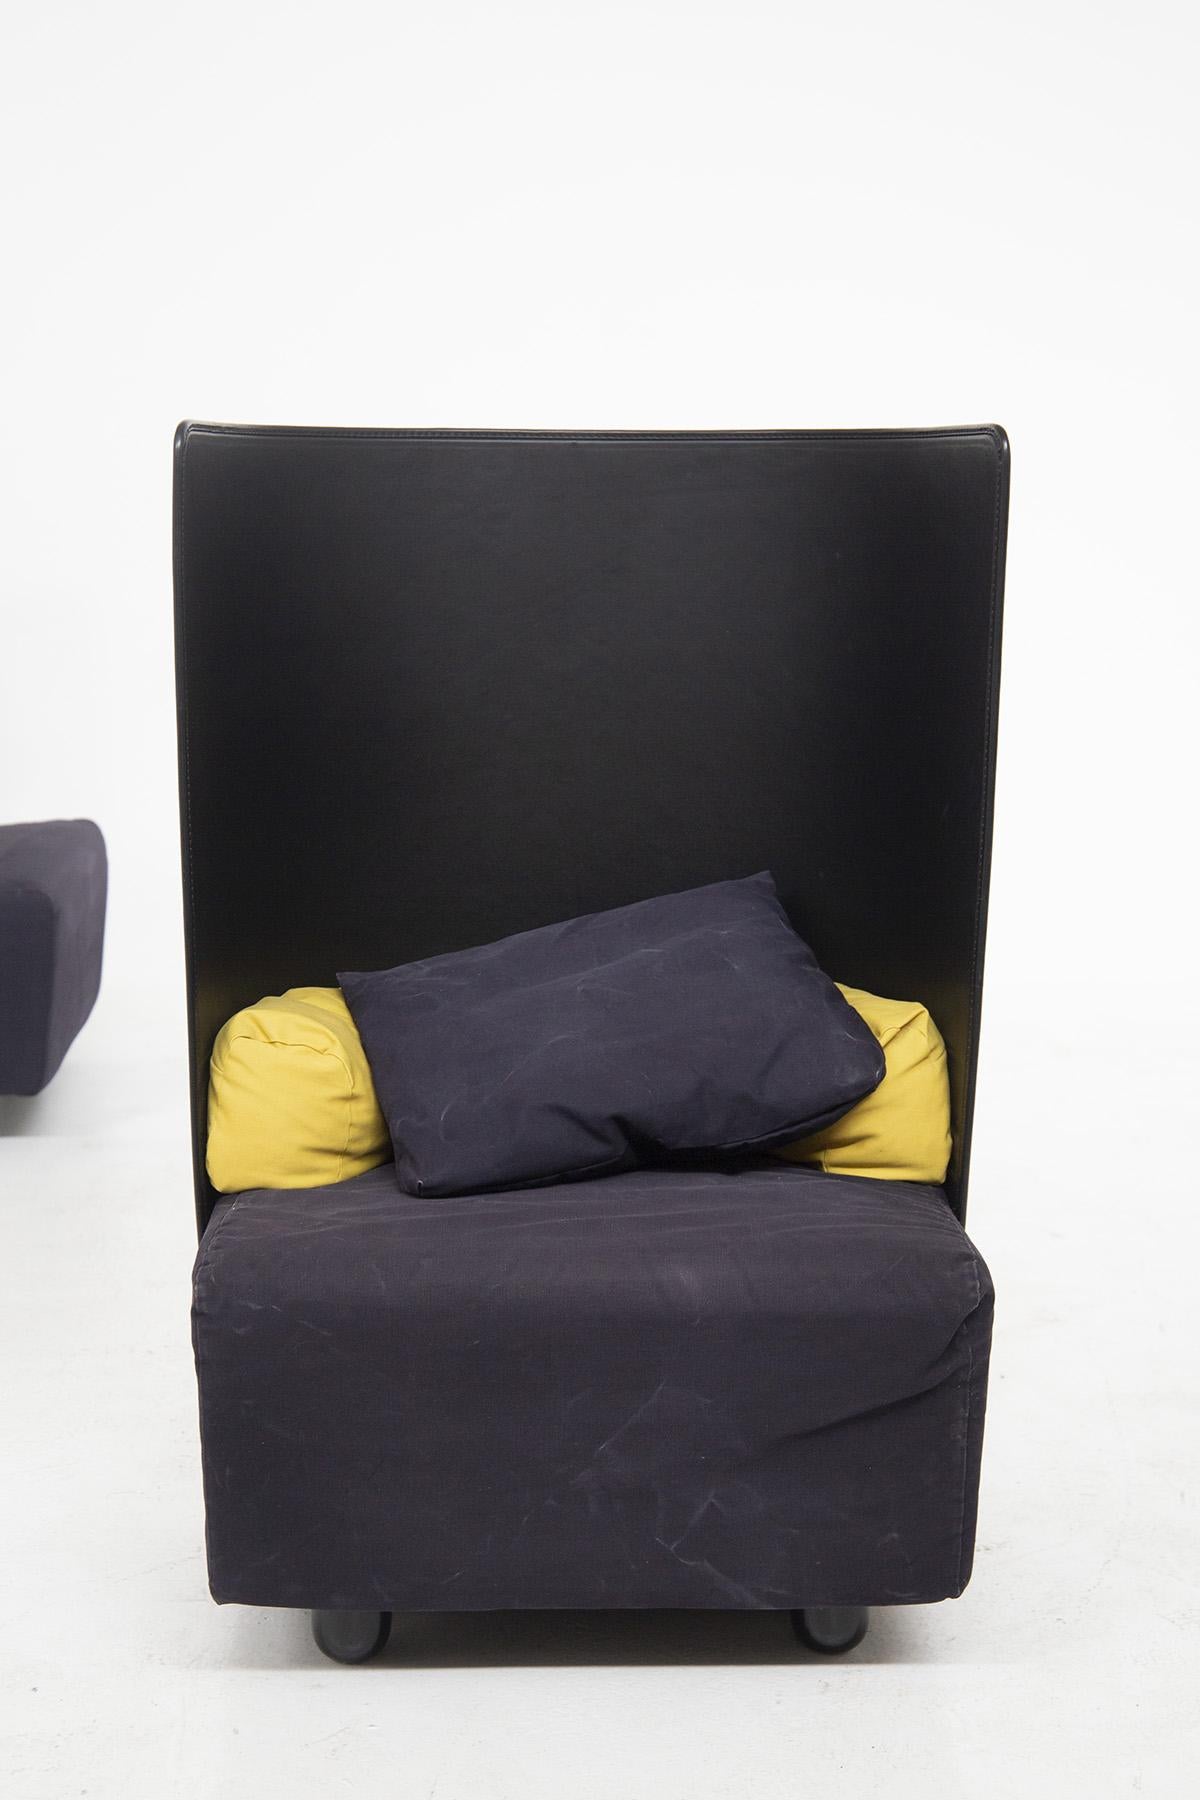 Attraktives Sesselpaar, hergestellt in den 1980er Jahren von De Pas, D'urbino und Zanotta, aus feiner italienischer Fertigung.
Die Sessel haben eine gebogene Rückenlehne aus schwarzem MATERIAL, sehr exzentrisch.
Es gibt 4 zylindrische Stützfüße,